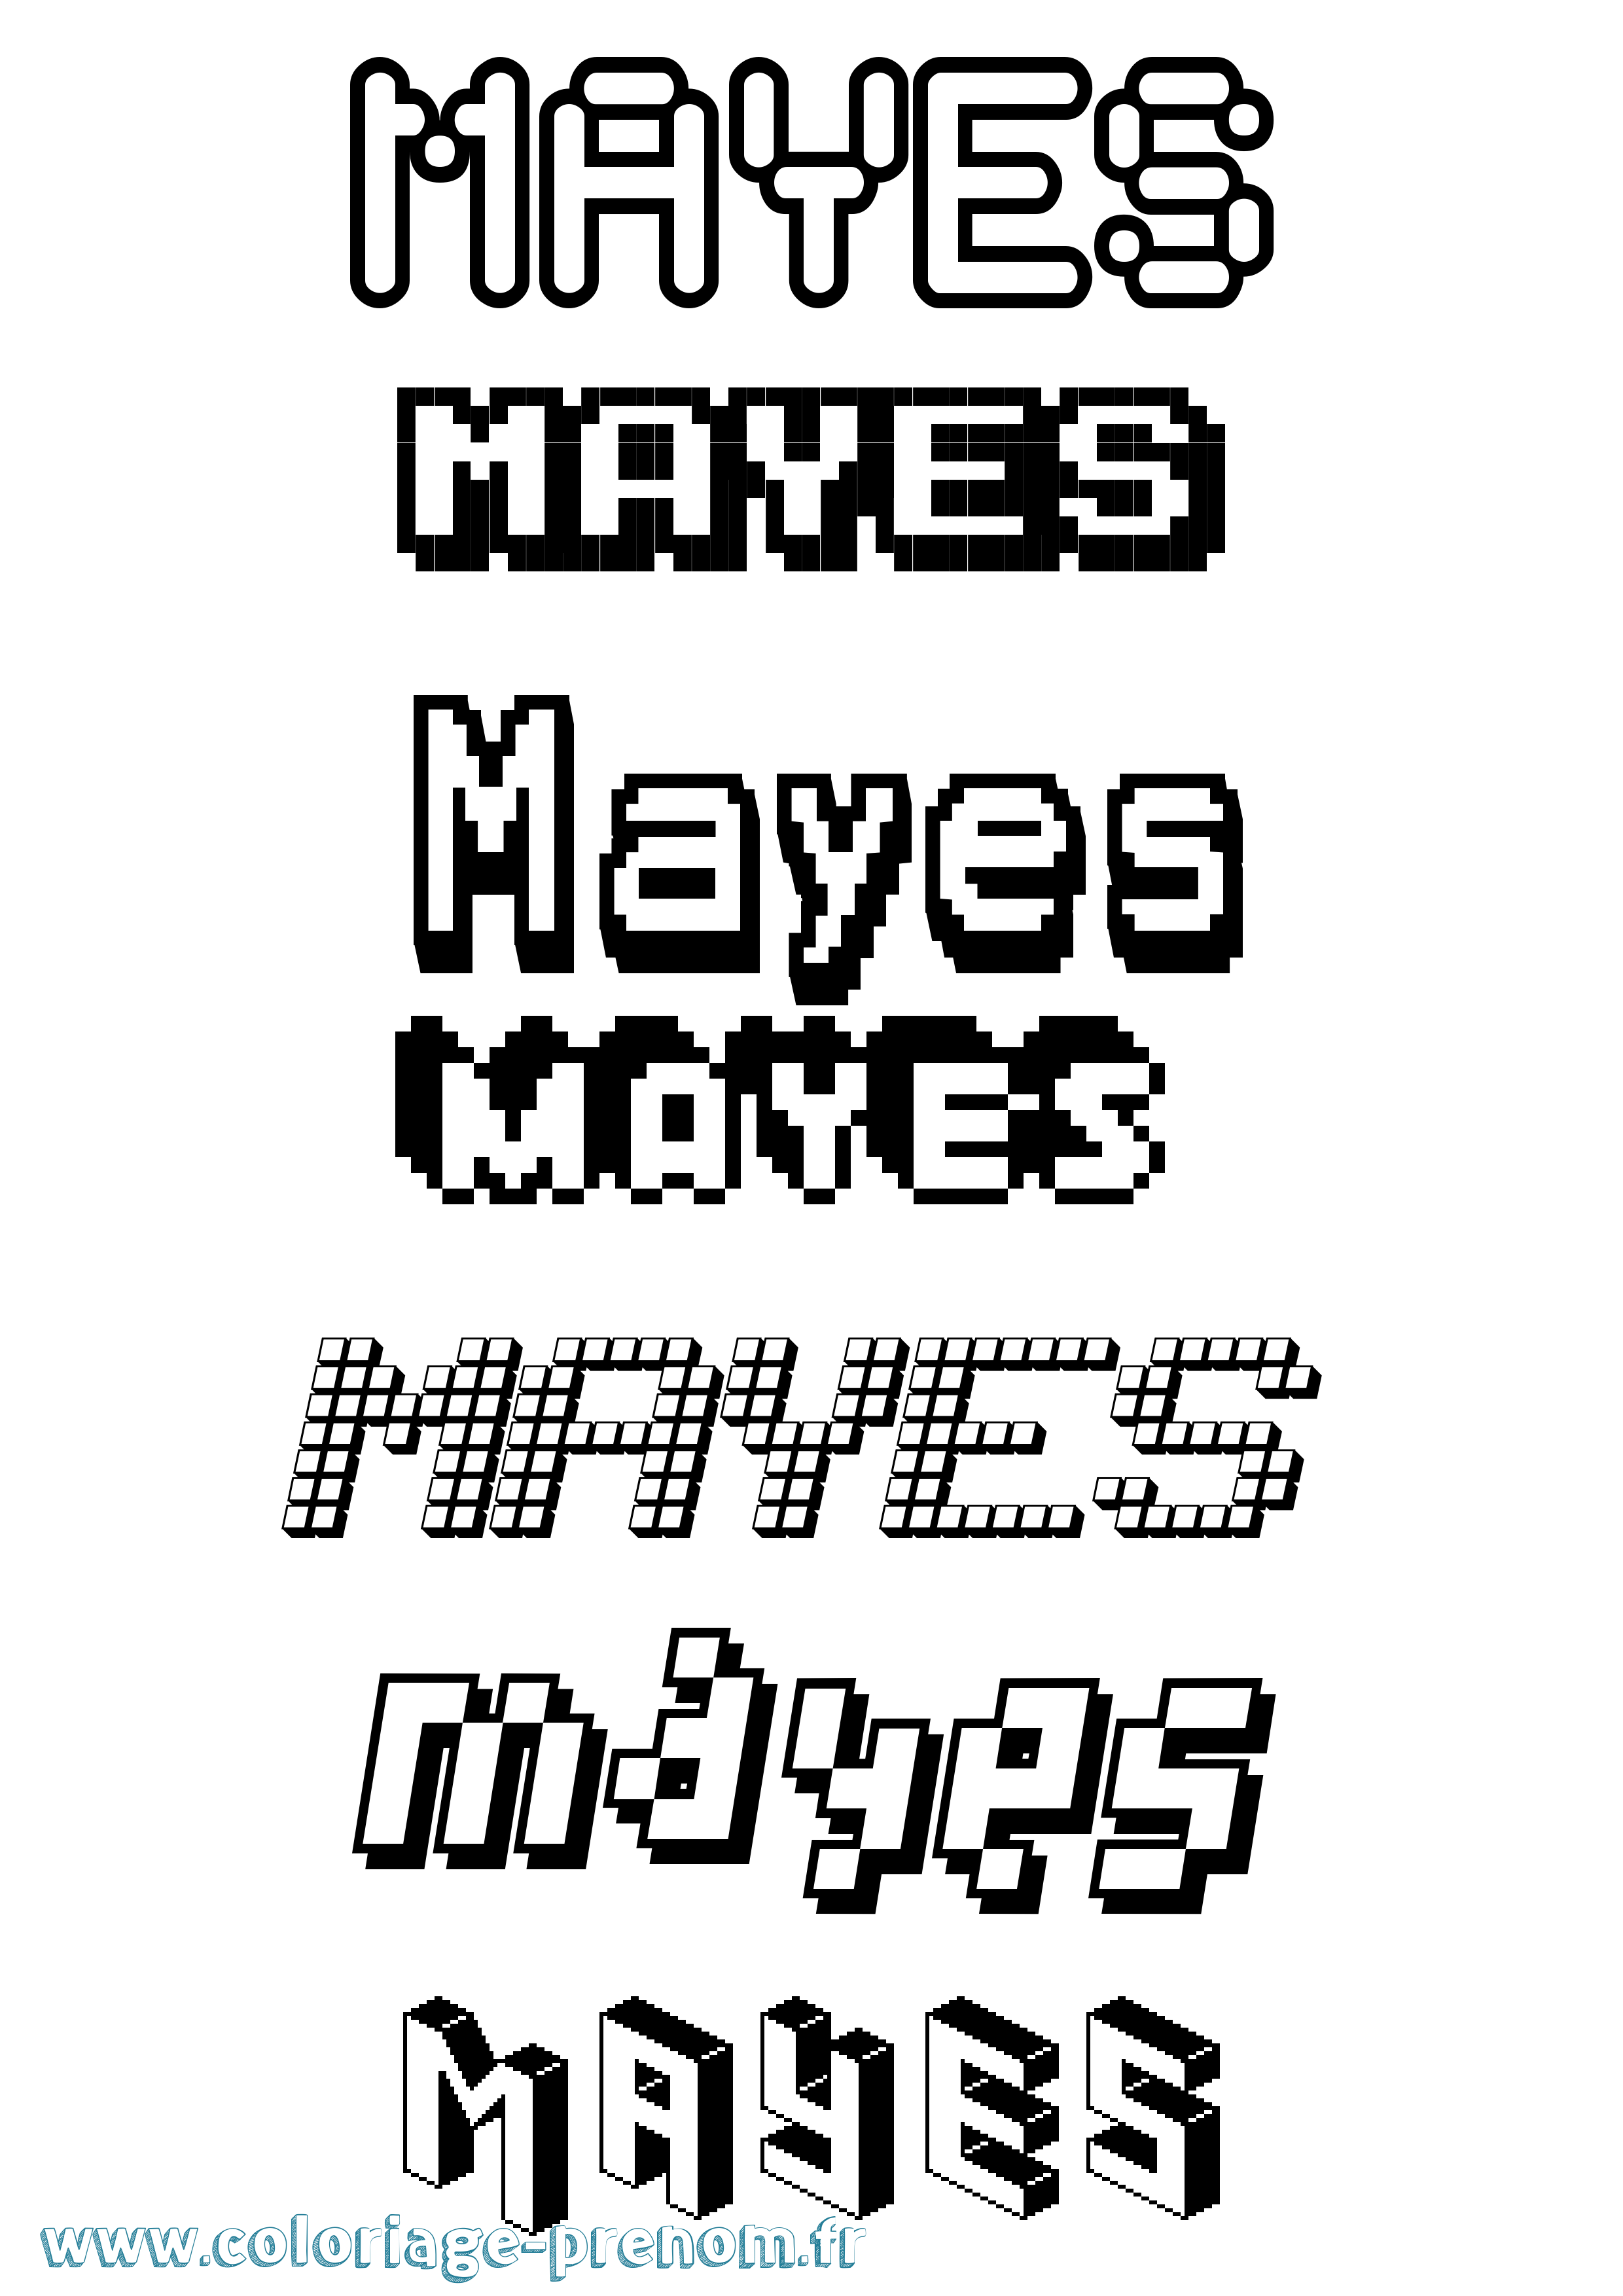 Coloriage prénom Mayes Pixel